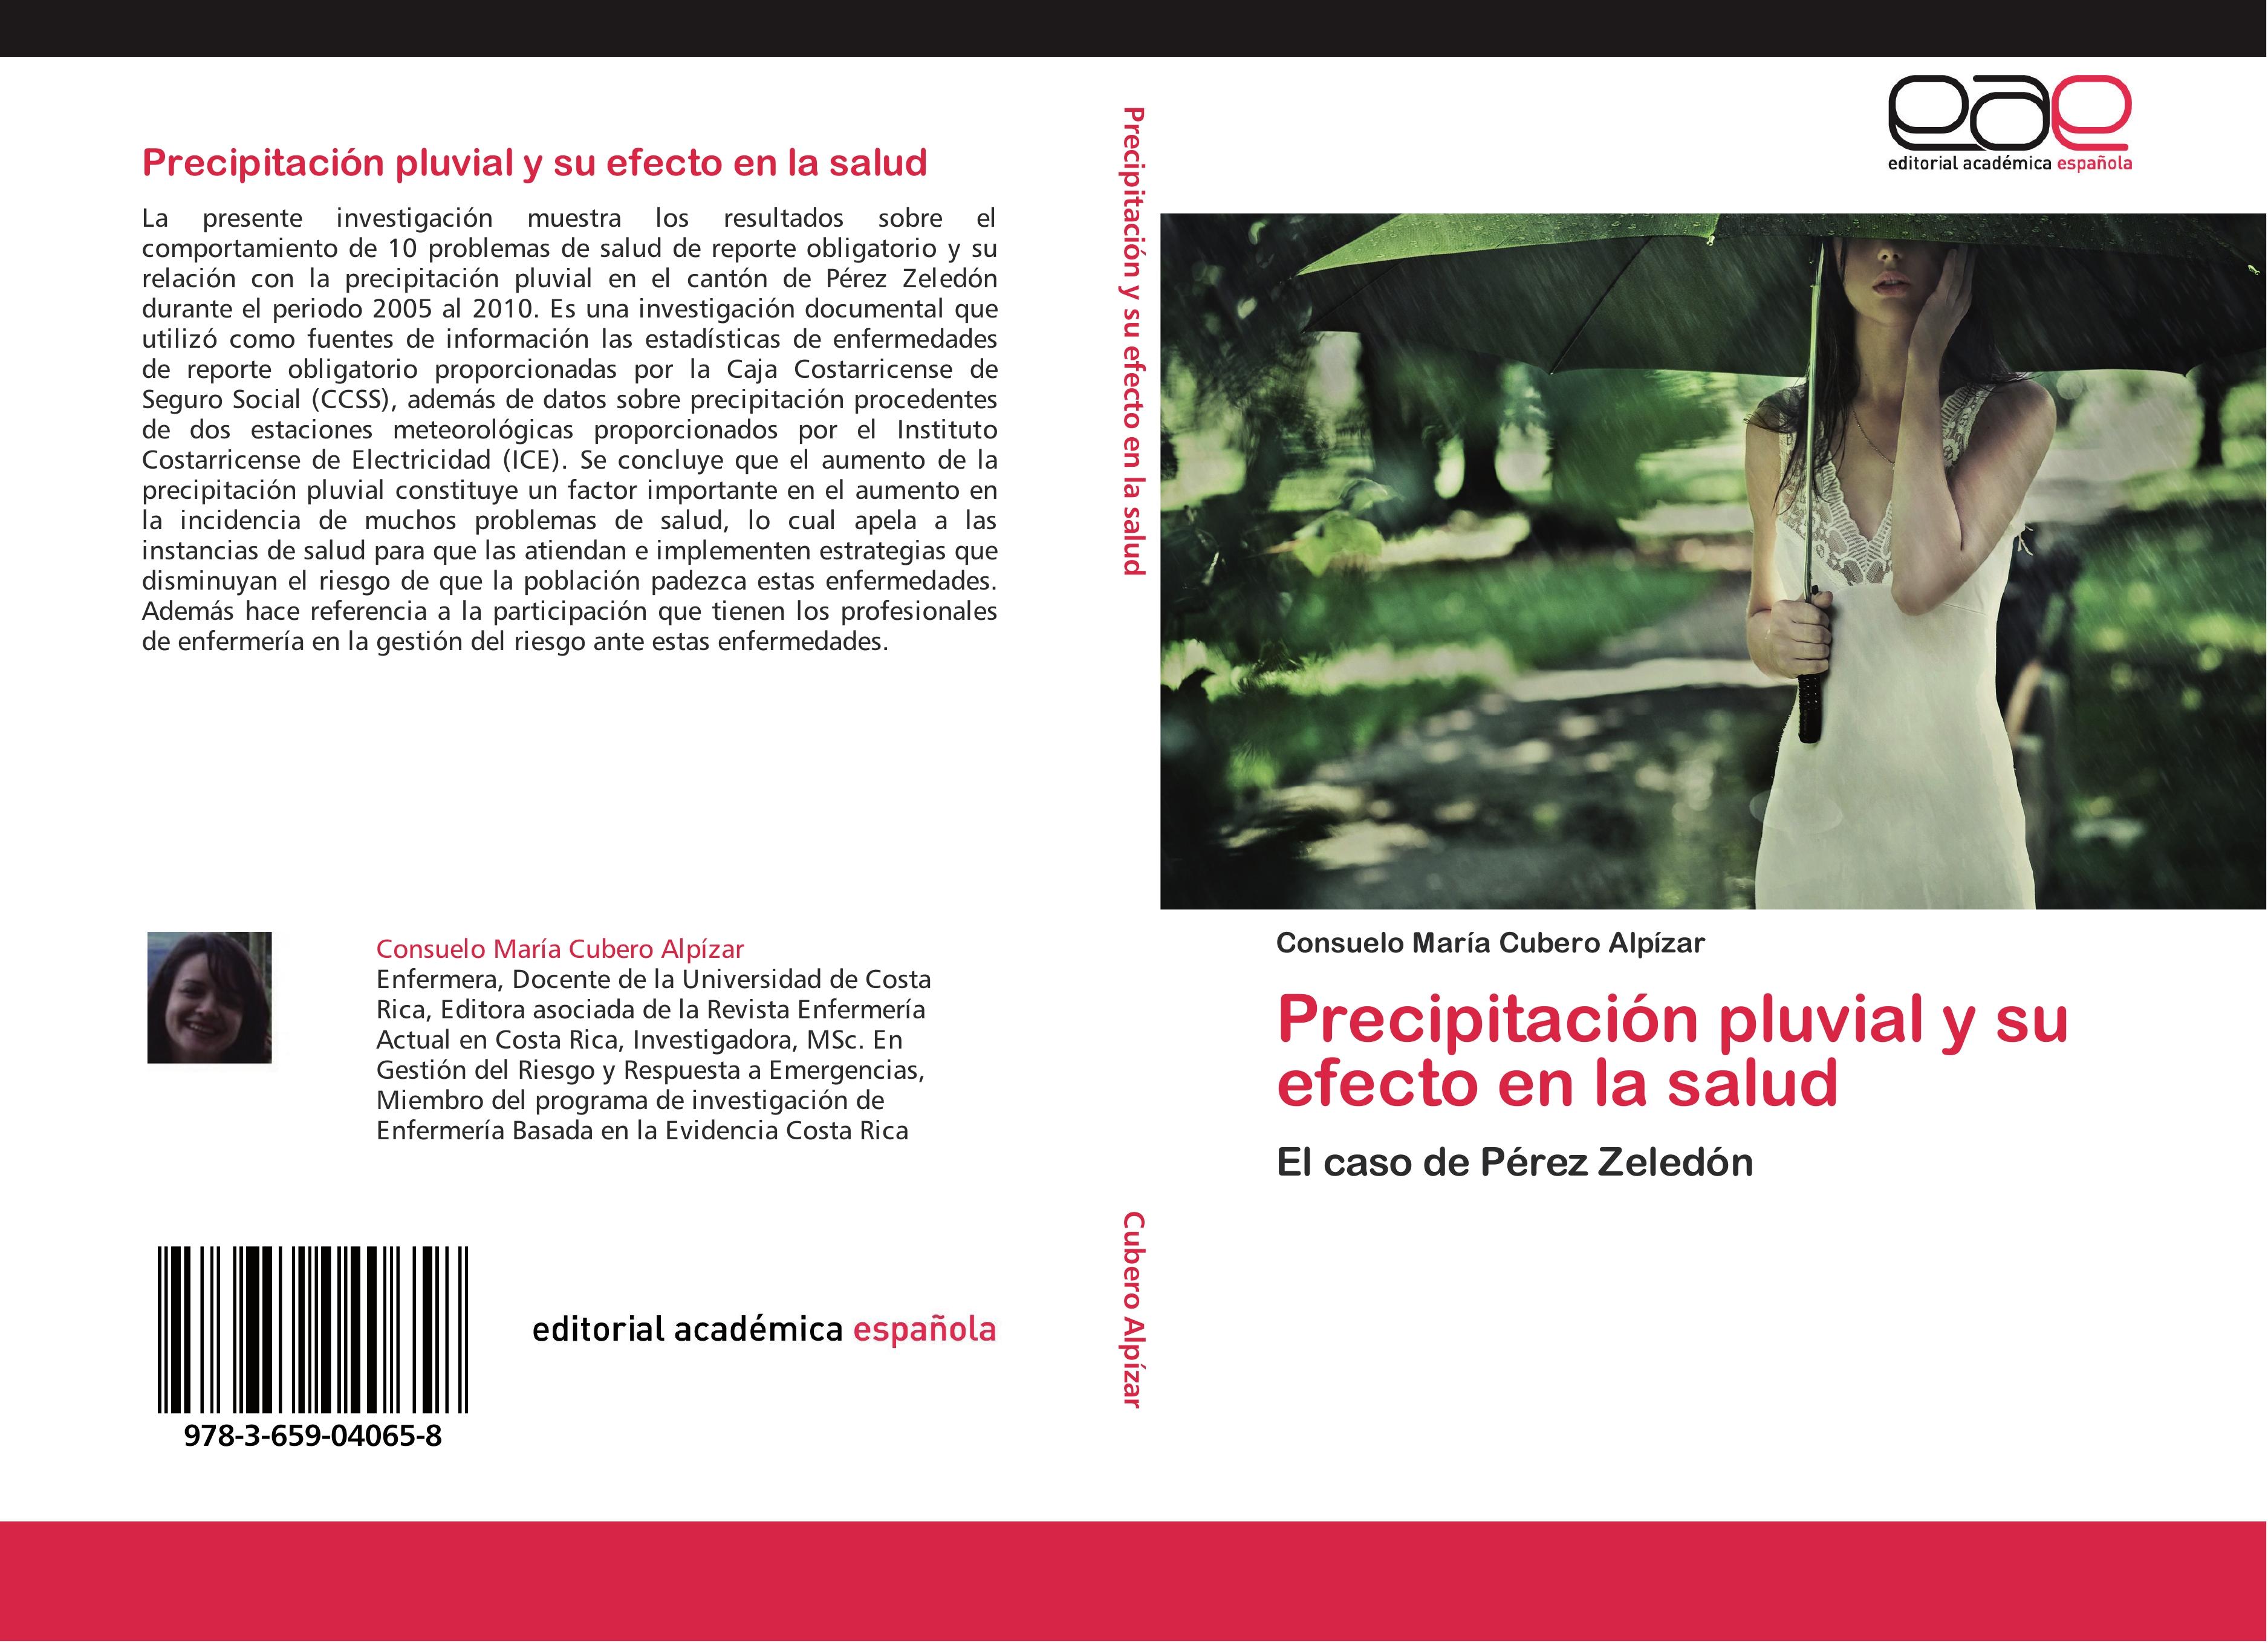 Precipitación pluvial y su efecto en la salud - Consuelo María Cubero Alpízar